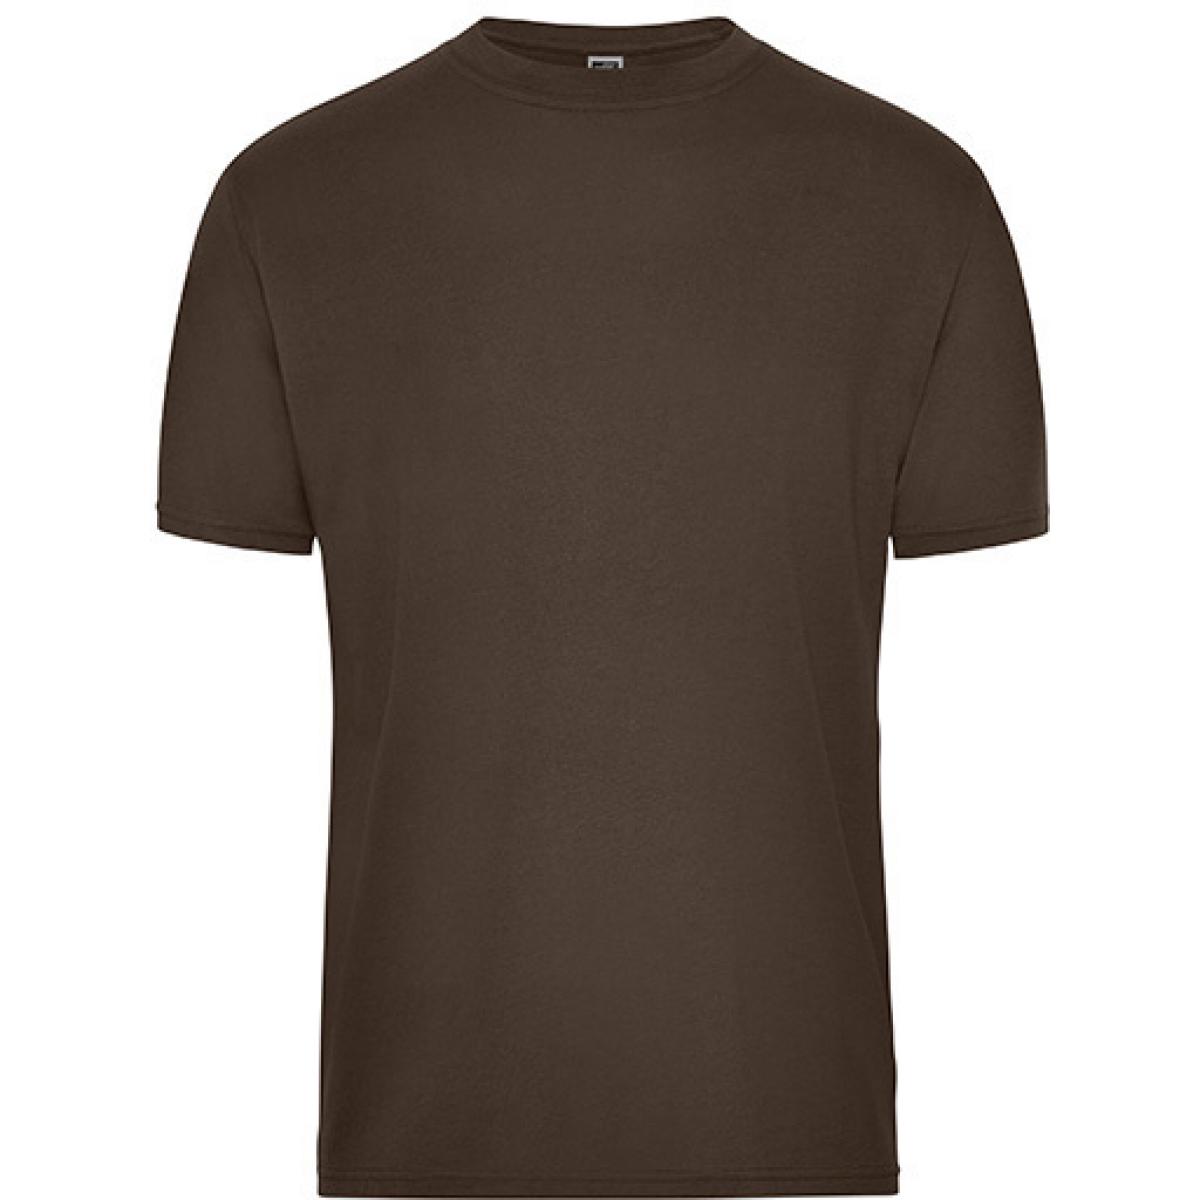 Hersteller: James+Nicholson Herstellernummer: JN1808 Artikelbezeichnung: Men‘s BIO Workwear T-Shirt, Waschbar bis 60 °C Farbe: Brown